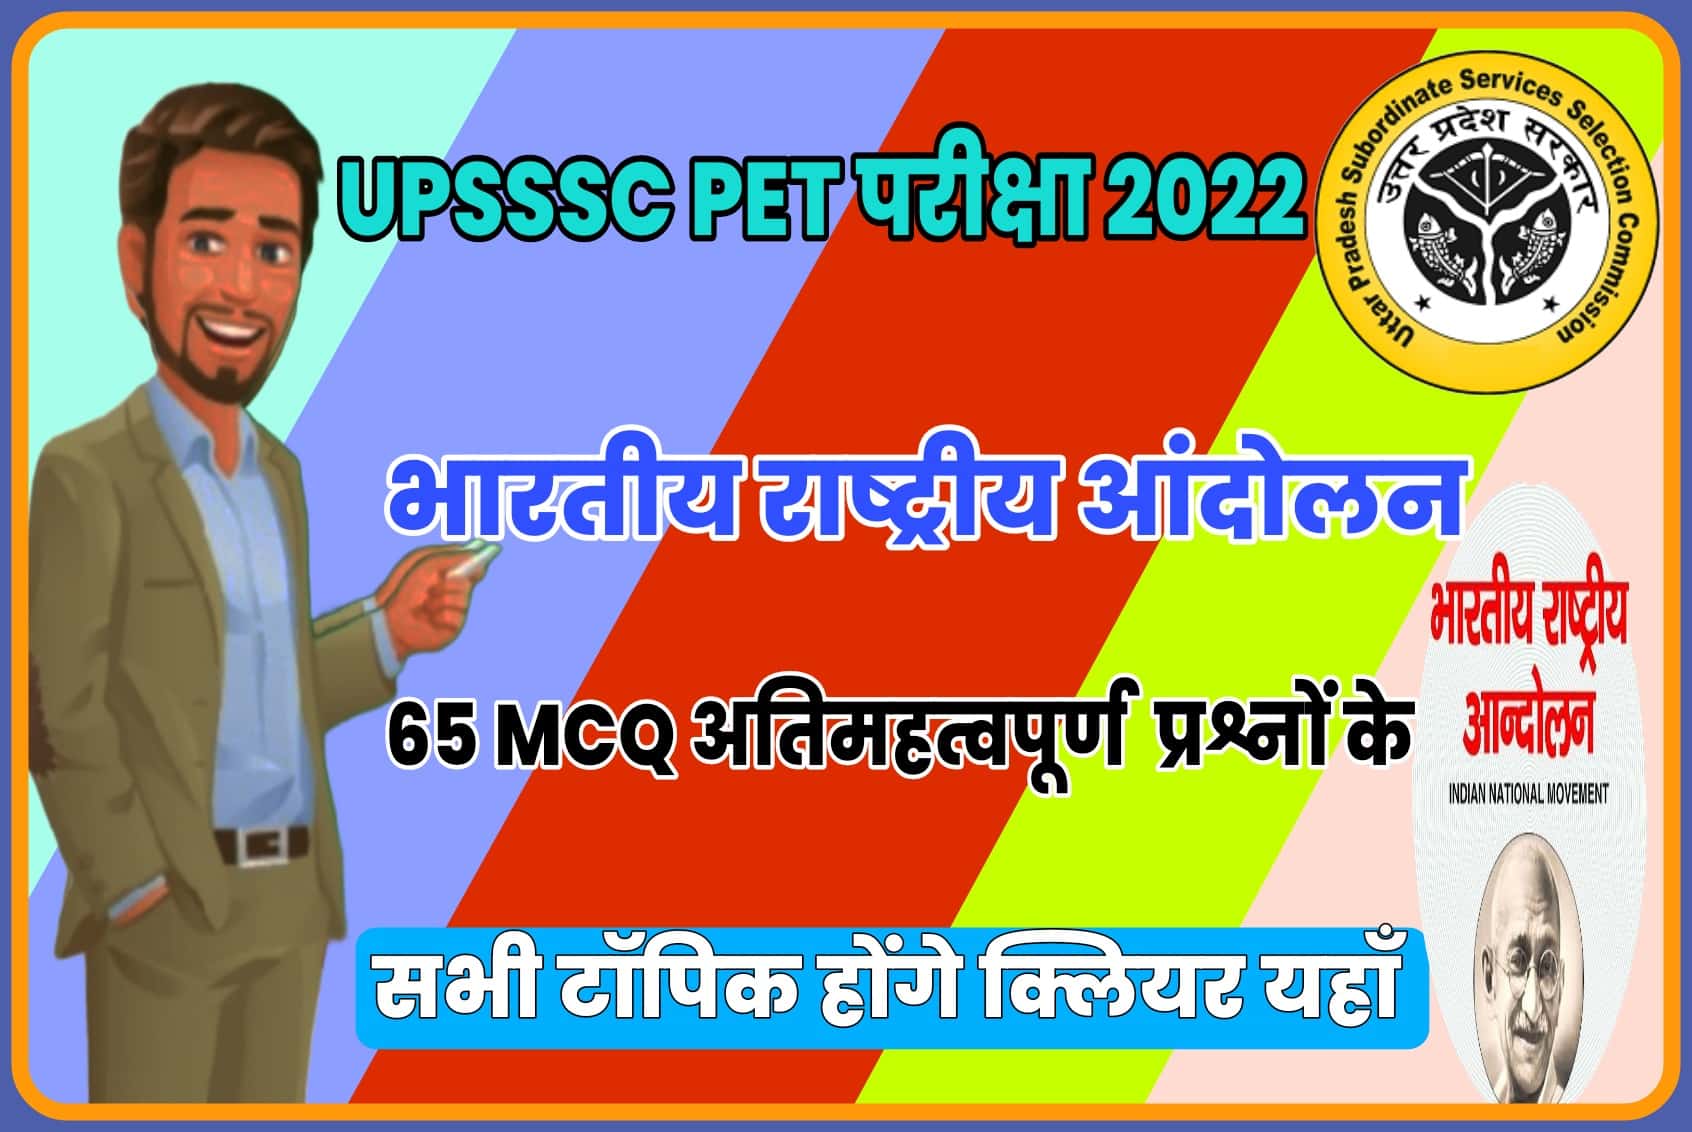 UPSSSC PET EXAM 2022 MCQ | आगामी परीक्षा से पहले अब होंगे भारतीय राष्ट्रीय आंदोलन के सभी टॉपिक क्लियर यहाँ से